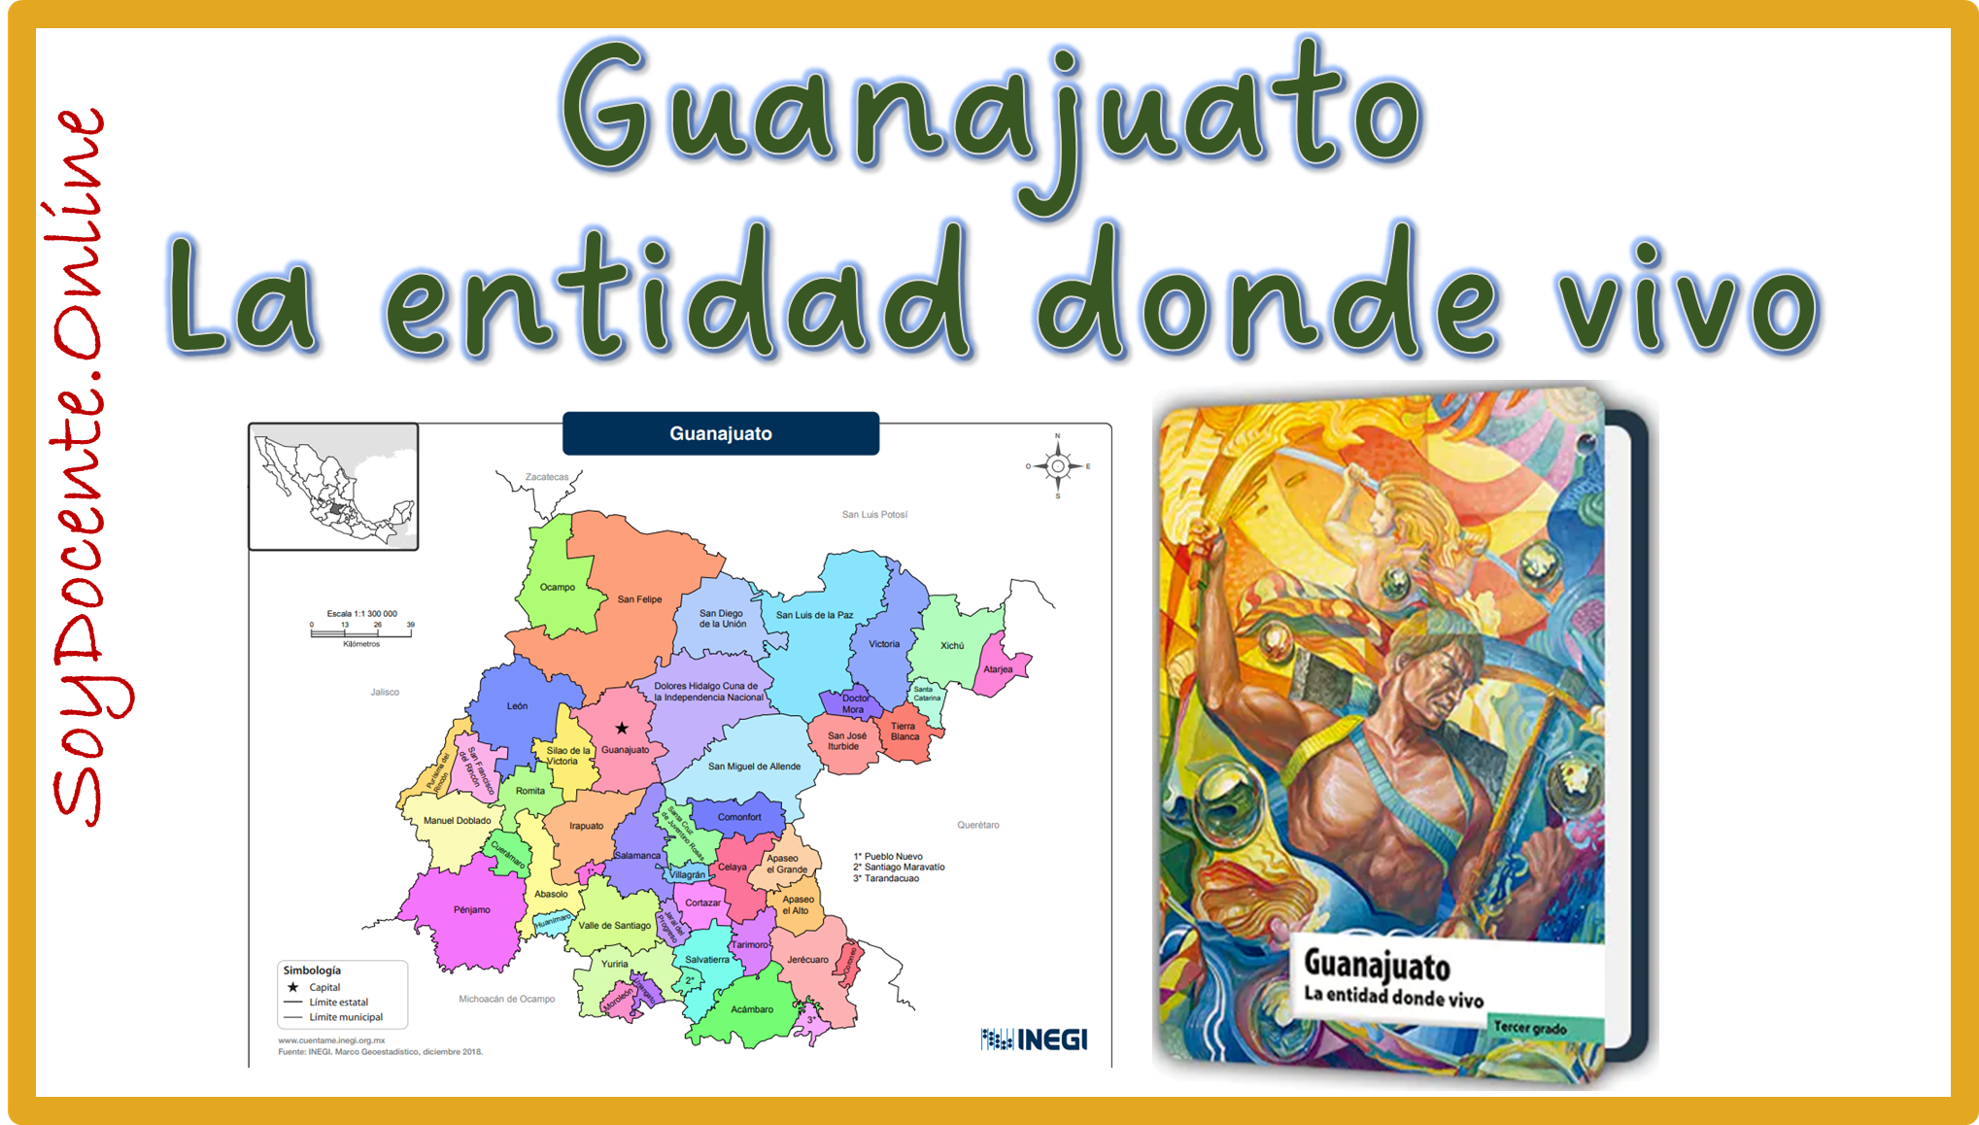 Ahora ya puedes descargar gratis en PDF el Libro de Guanajuato La entidad donde vivo tercer grado de Primaria, planificado por la SEP, distribuido por la CONALITEG.